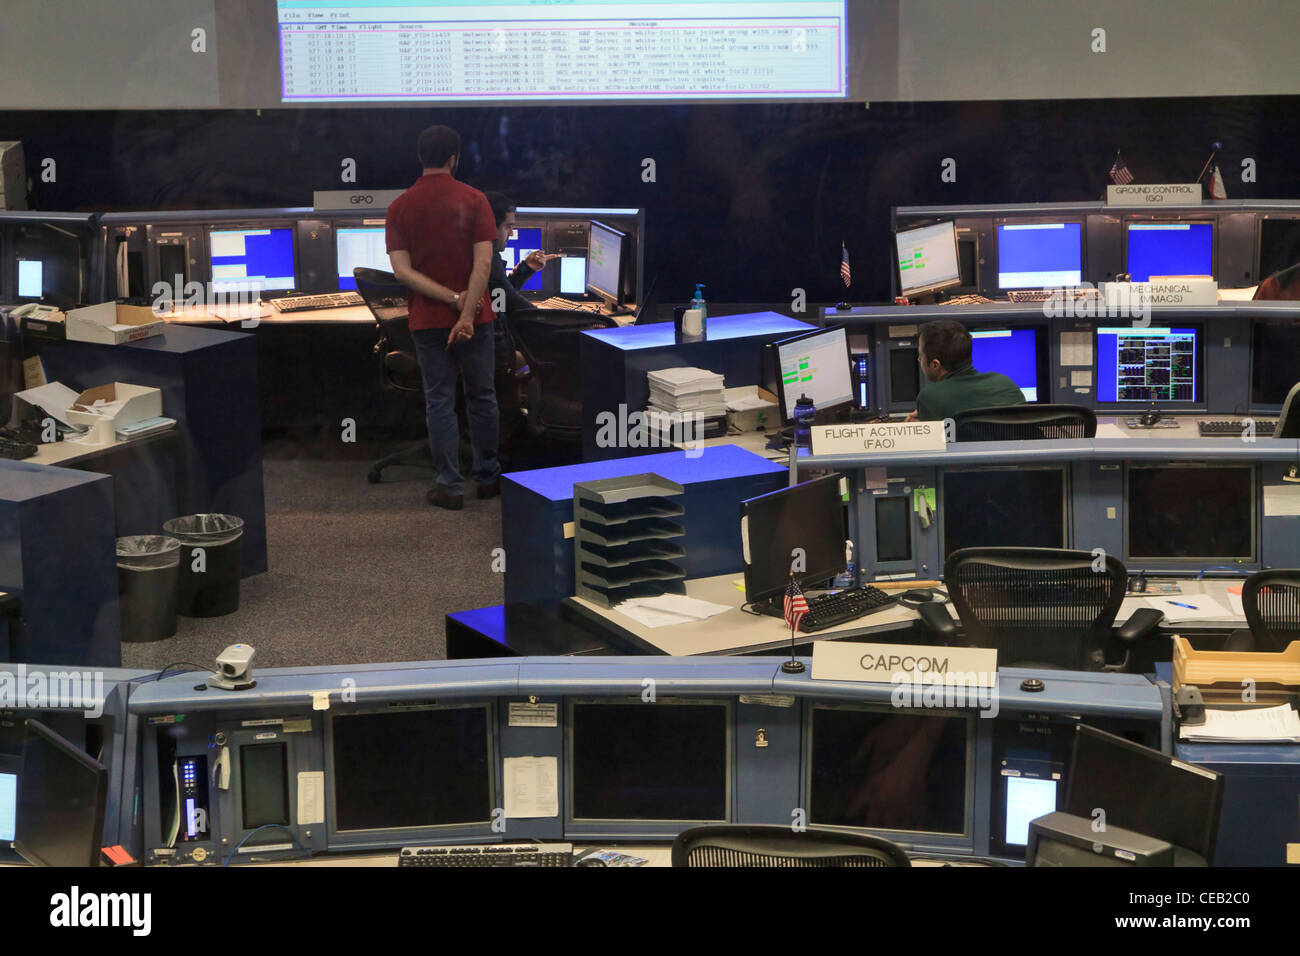 Centre de contrôle de mission, Johnson Space Center, au Texas. Banque D'Images